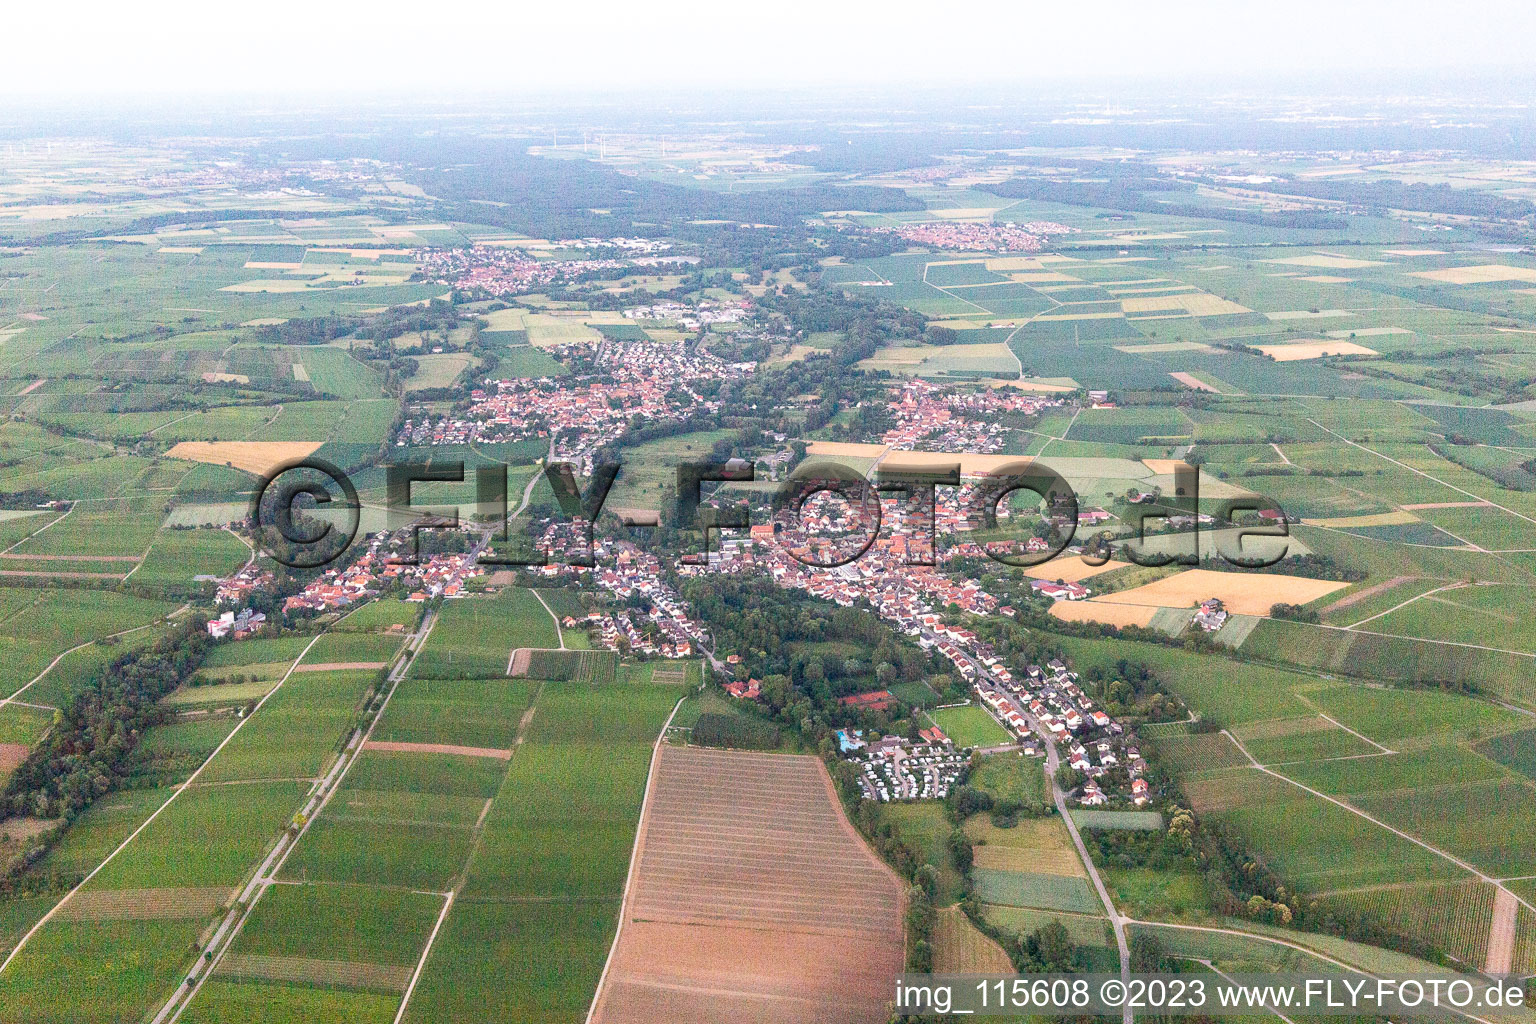 Quartier Billigheim in Billigheim-Ingenheim dans le département Rhénanie-Palatinat, Allemagne vu d'un drone